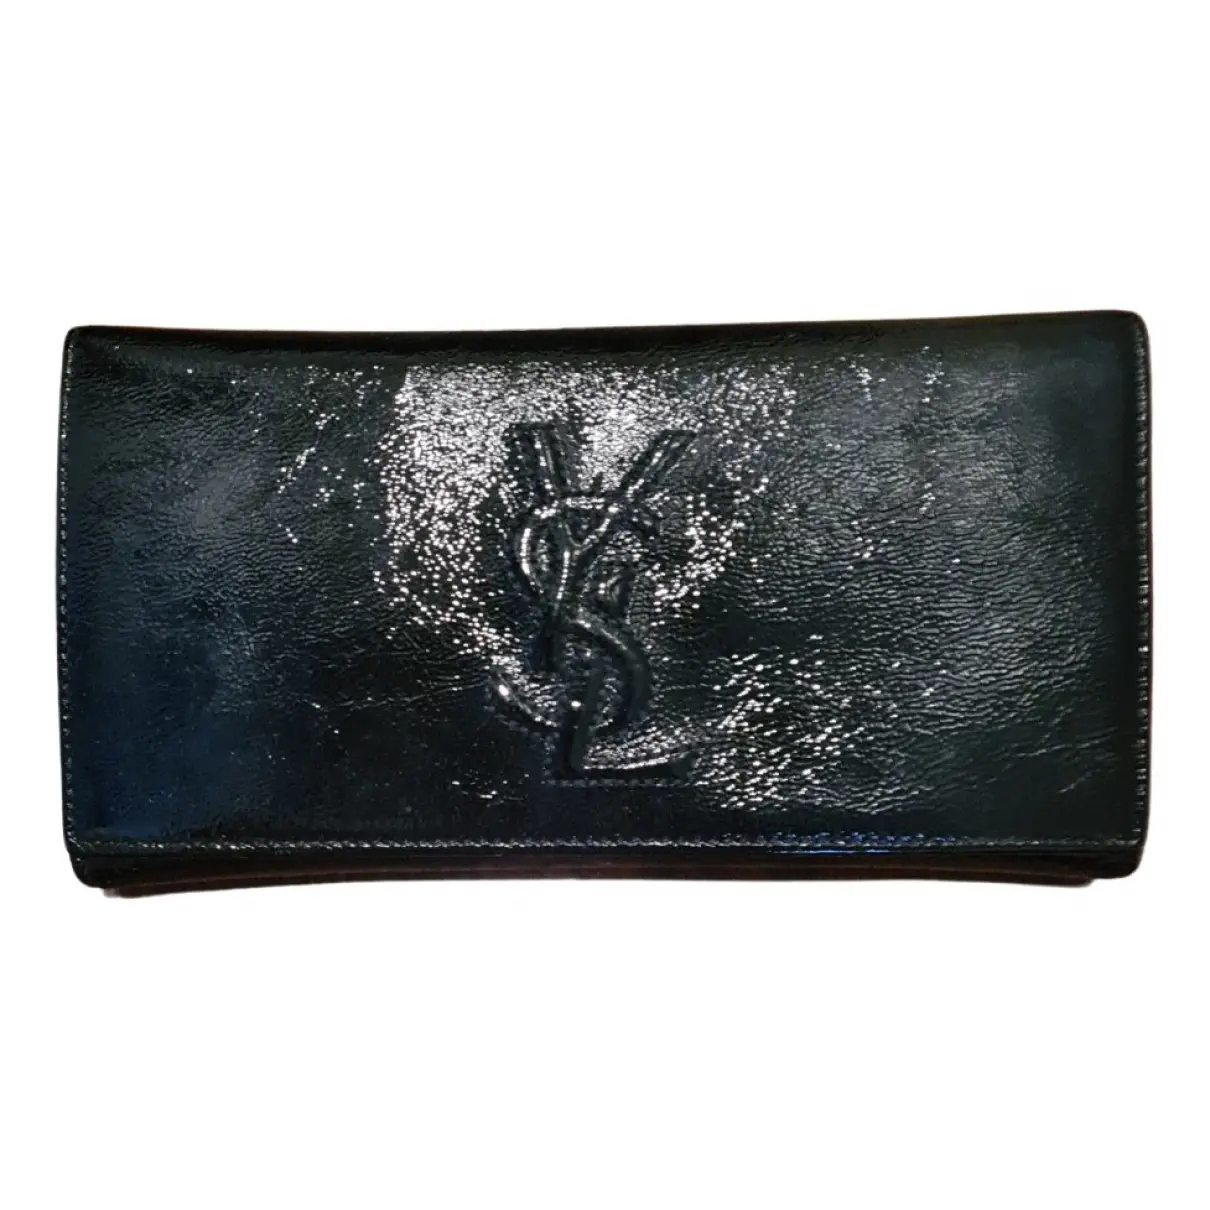 Patent leather wallet Yves Saint Laurent - Vintage